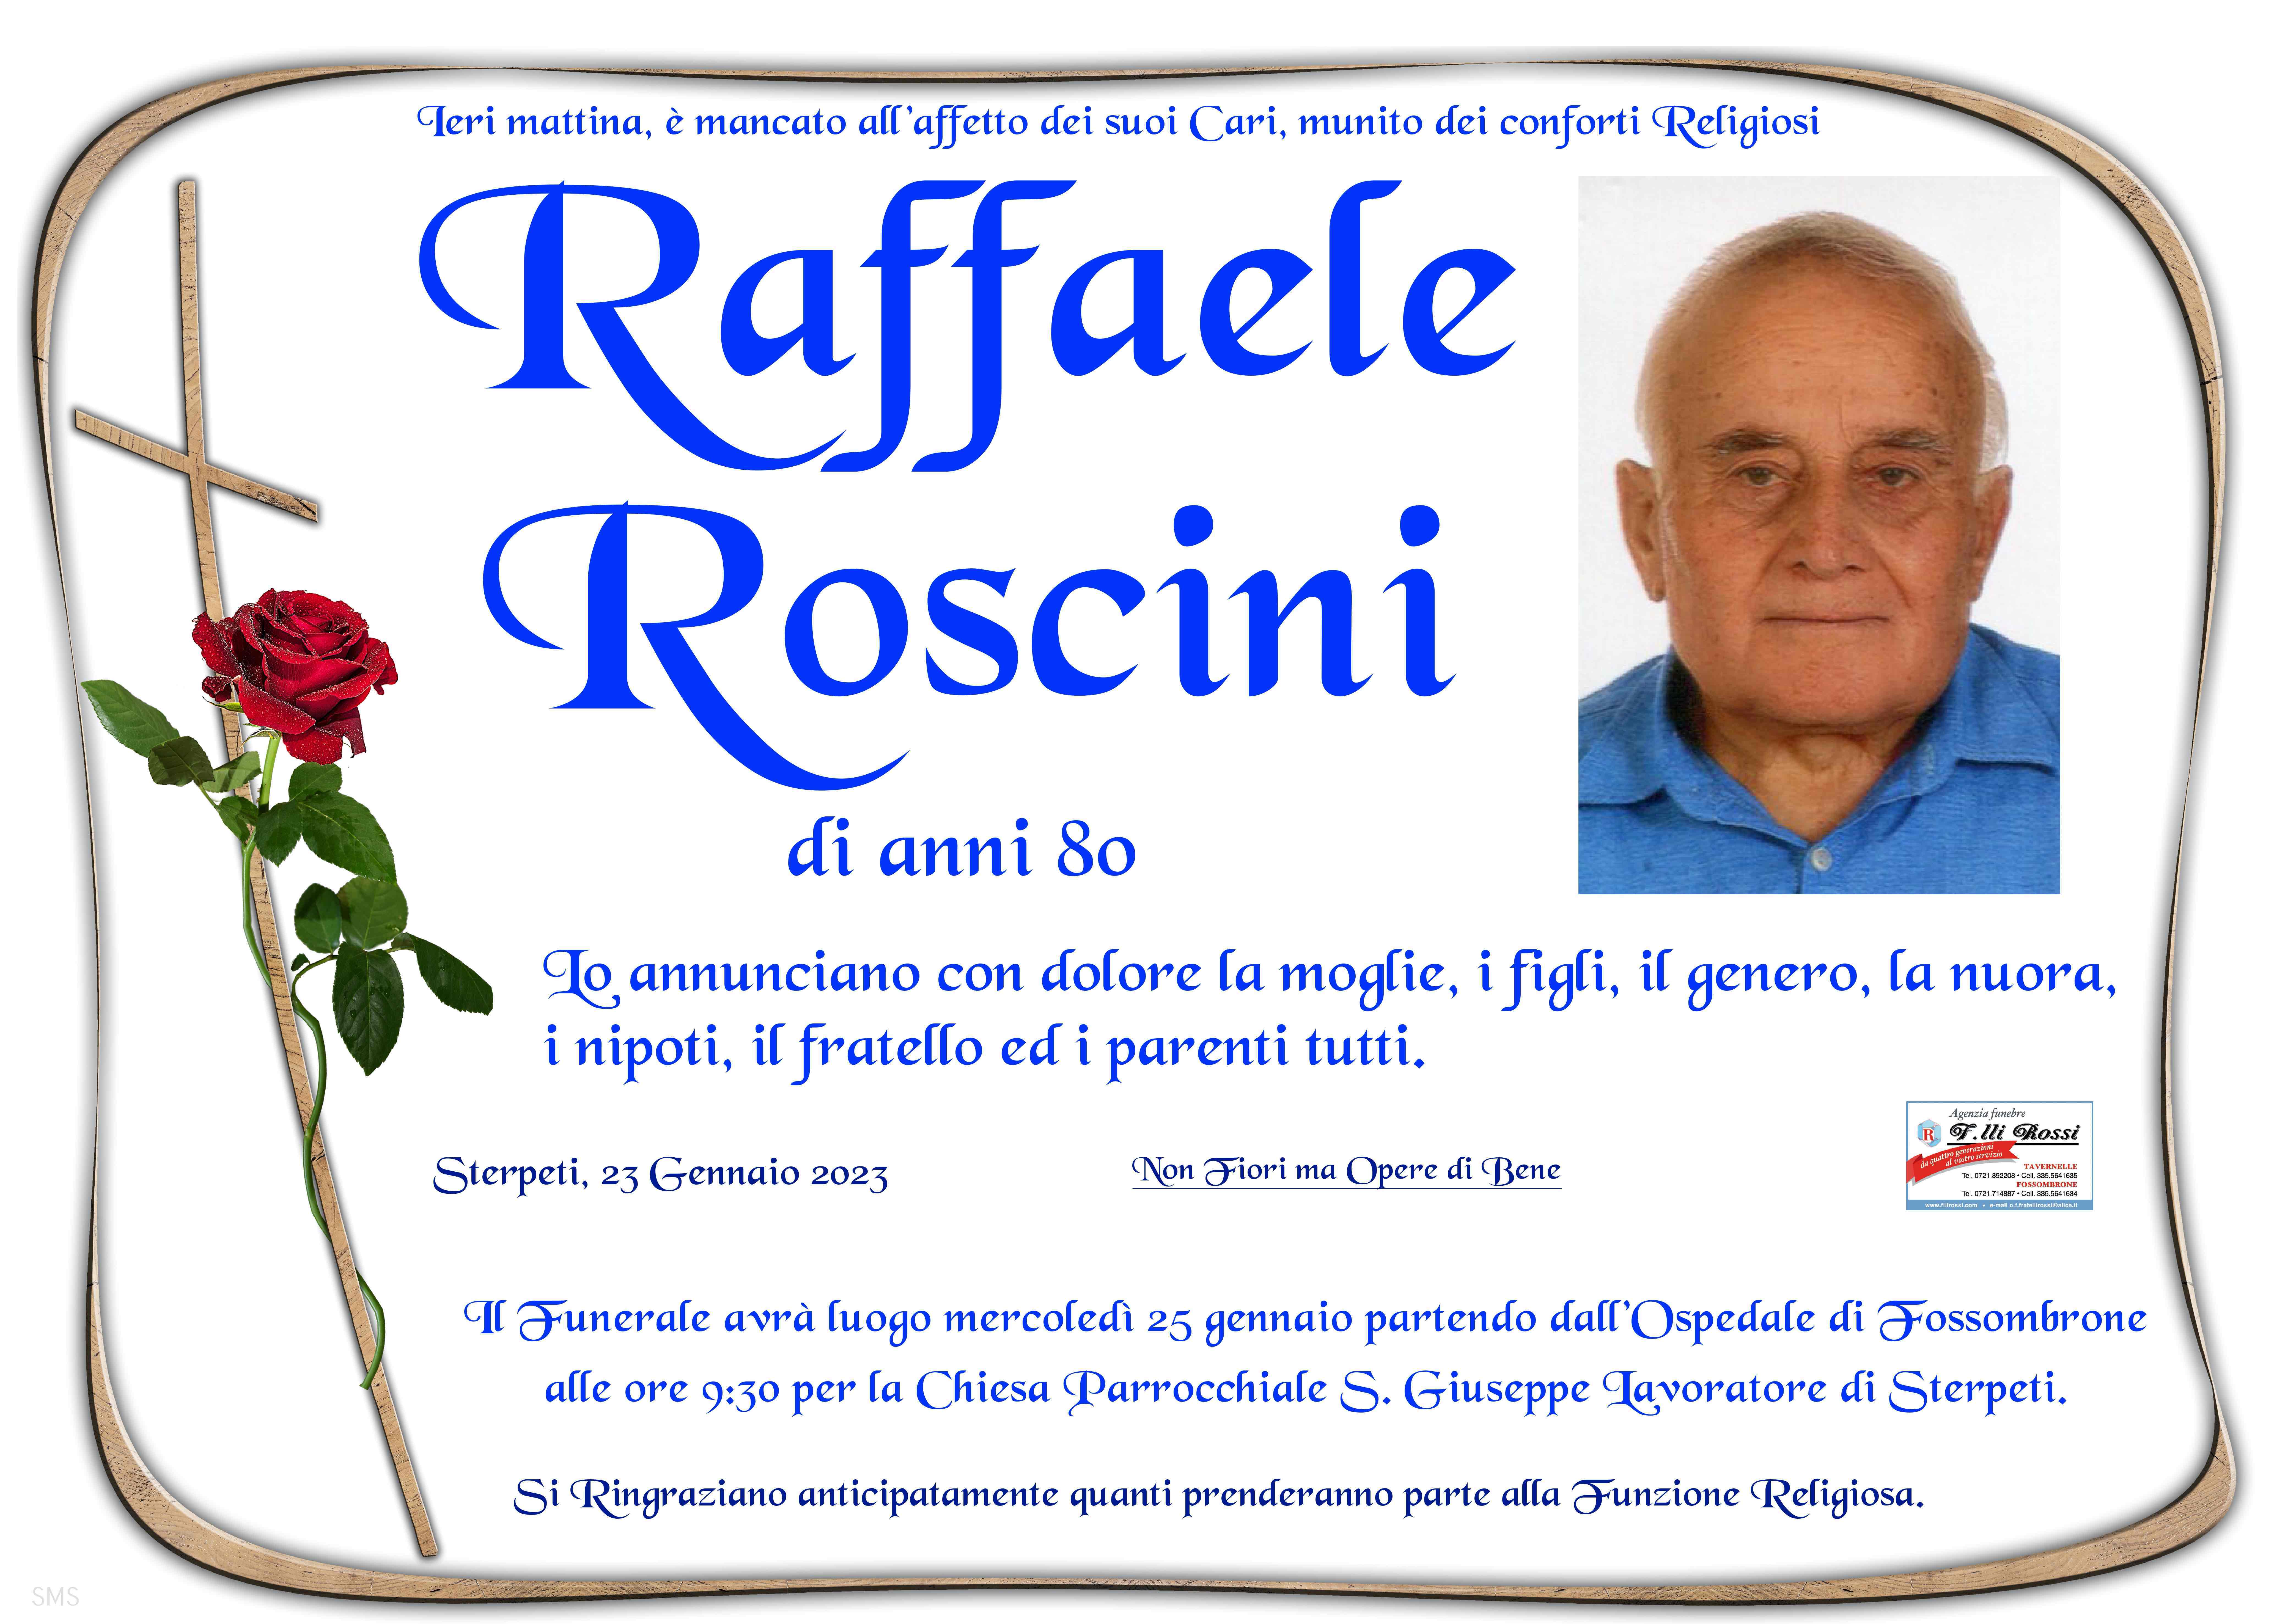 Raffaele Roscini